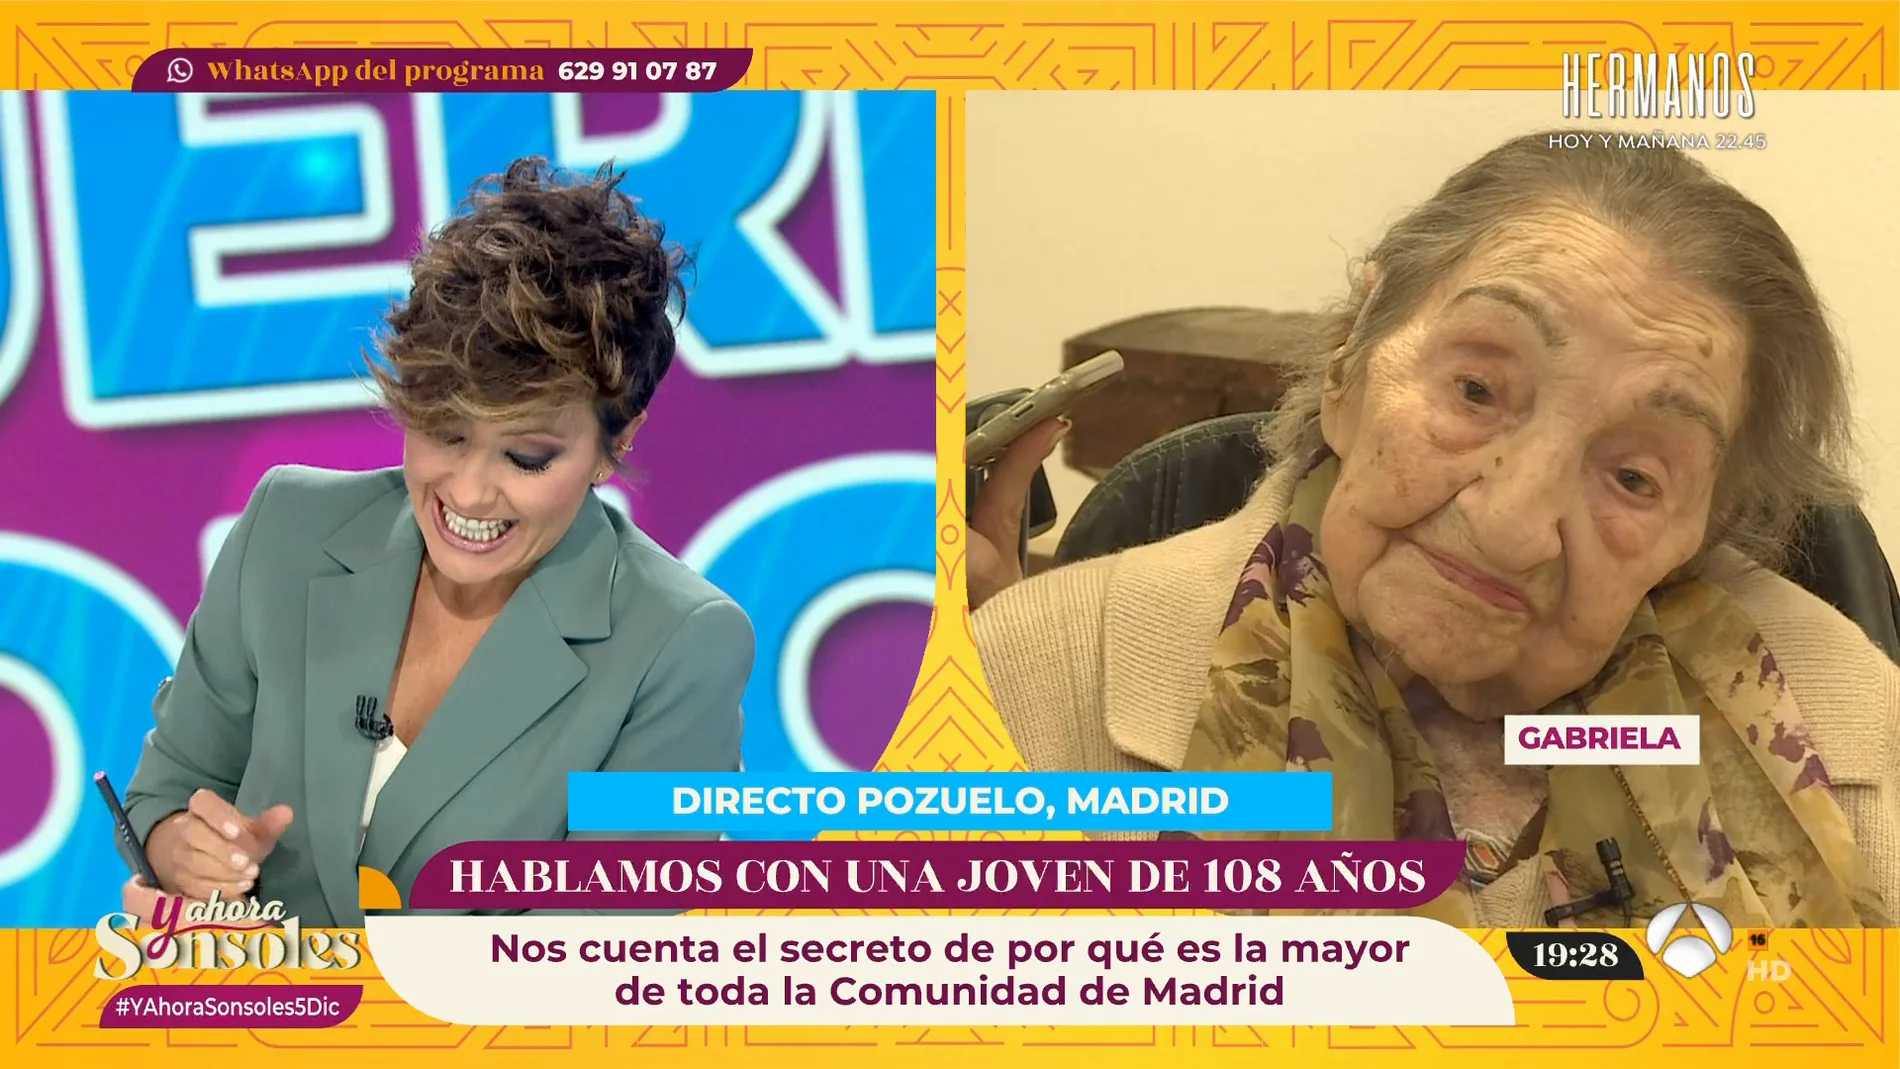 Gabriela, de 108 años, tiene claro el secreto para vivir más y mejor: ¡Comer de todo, pero poco!